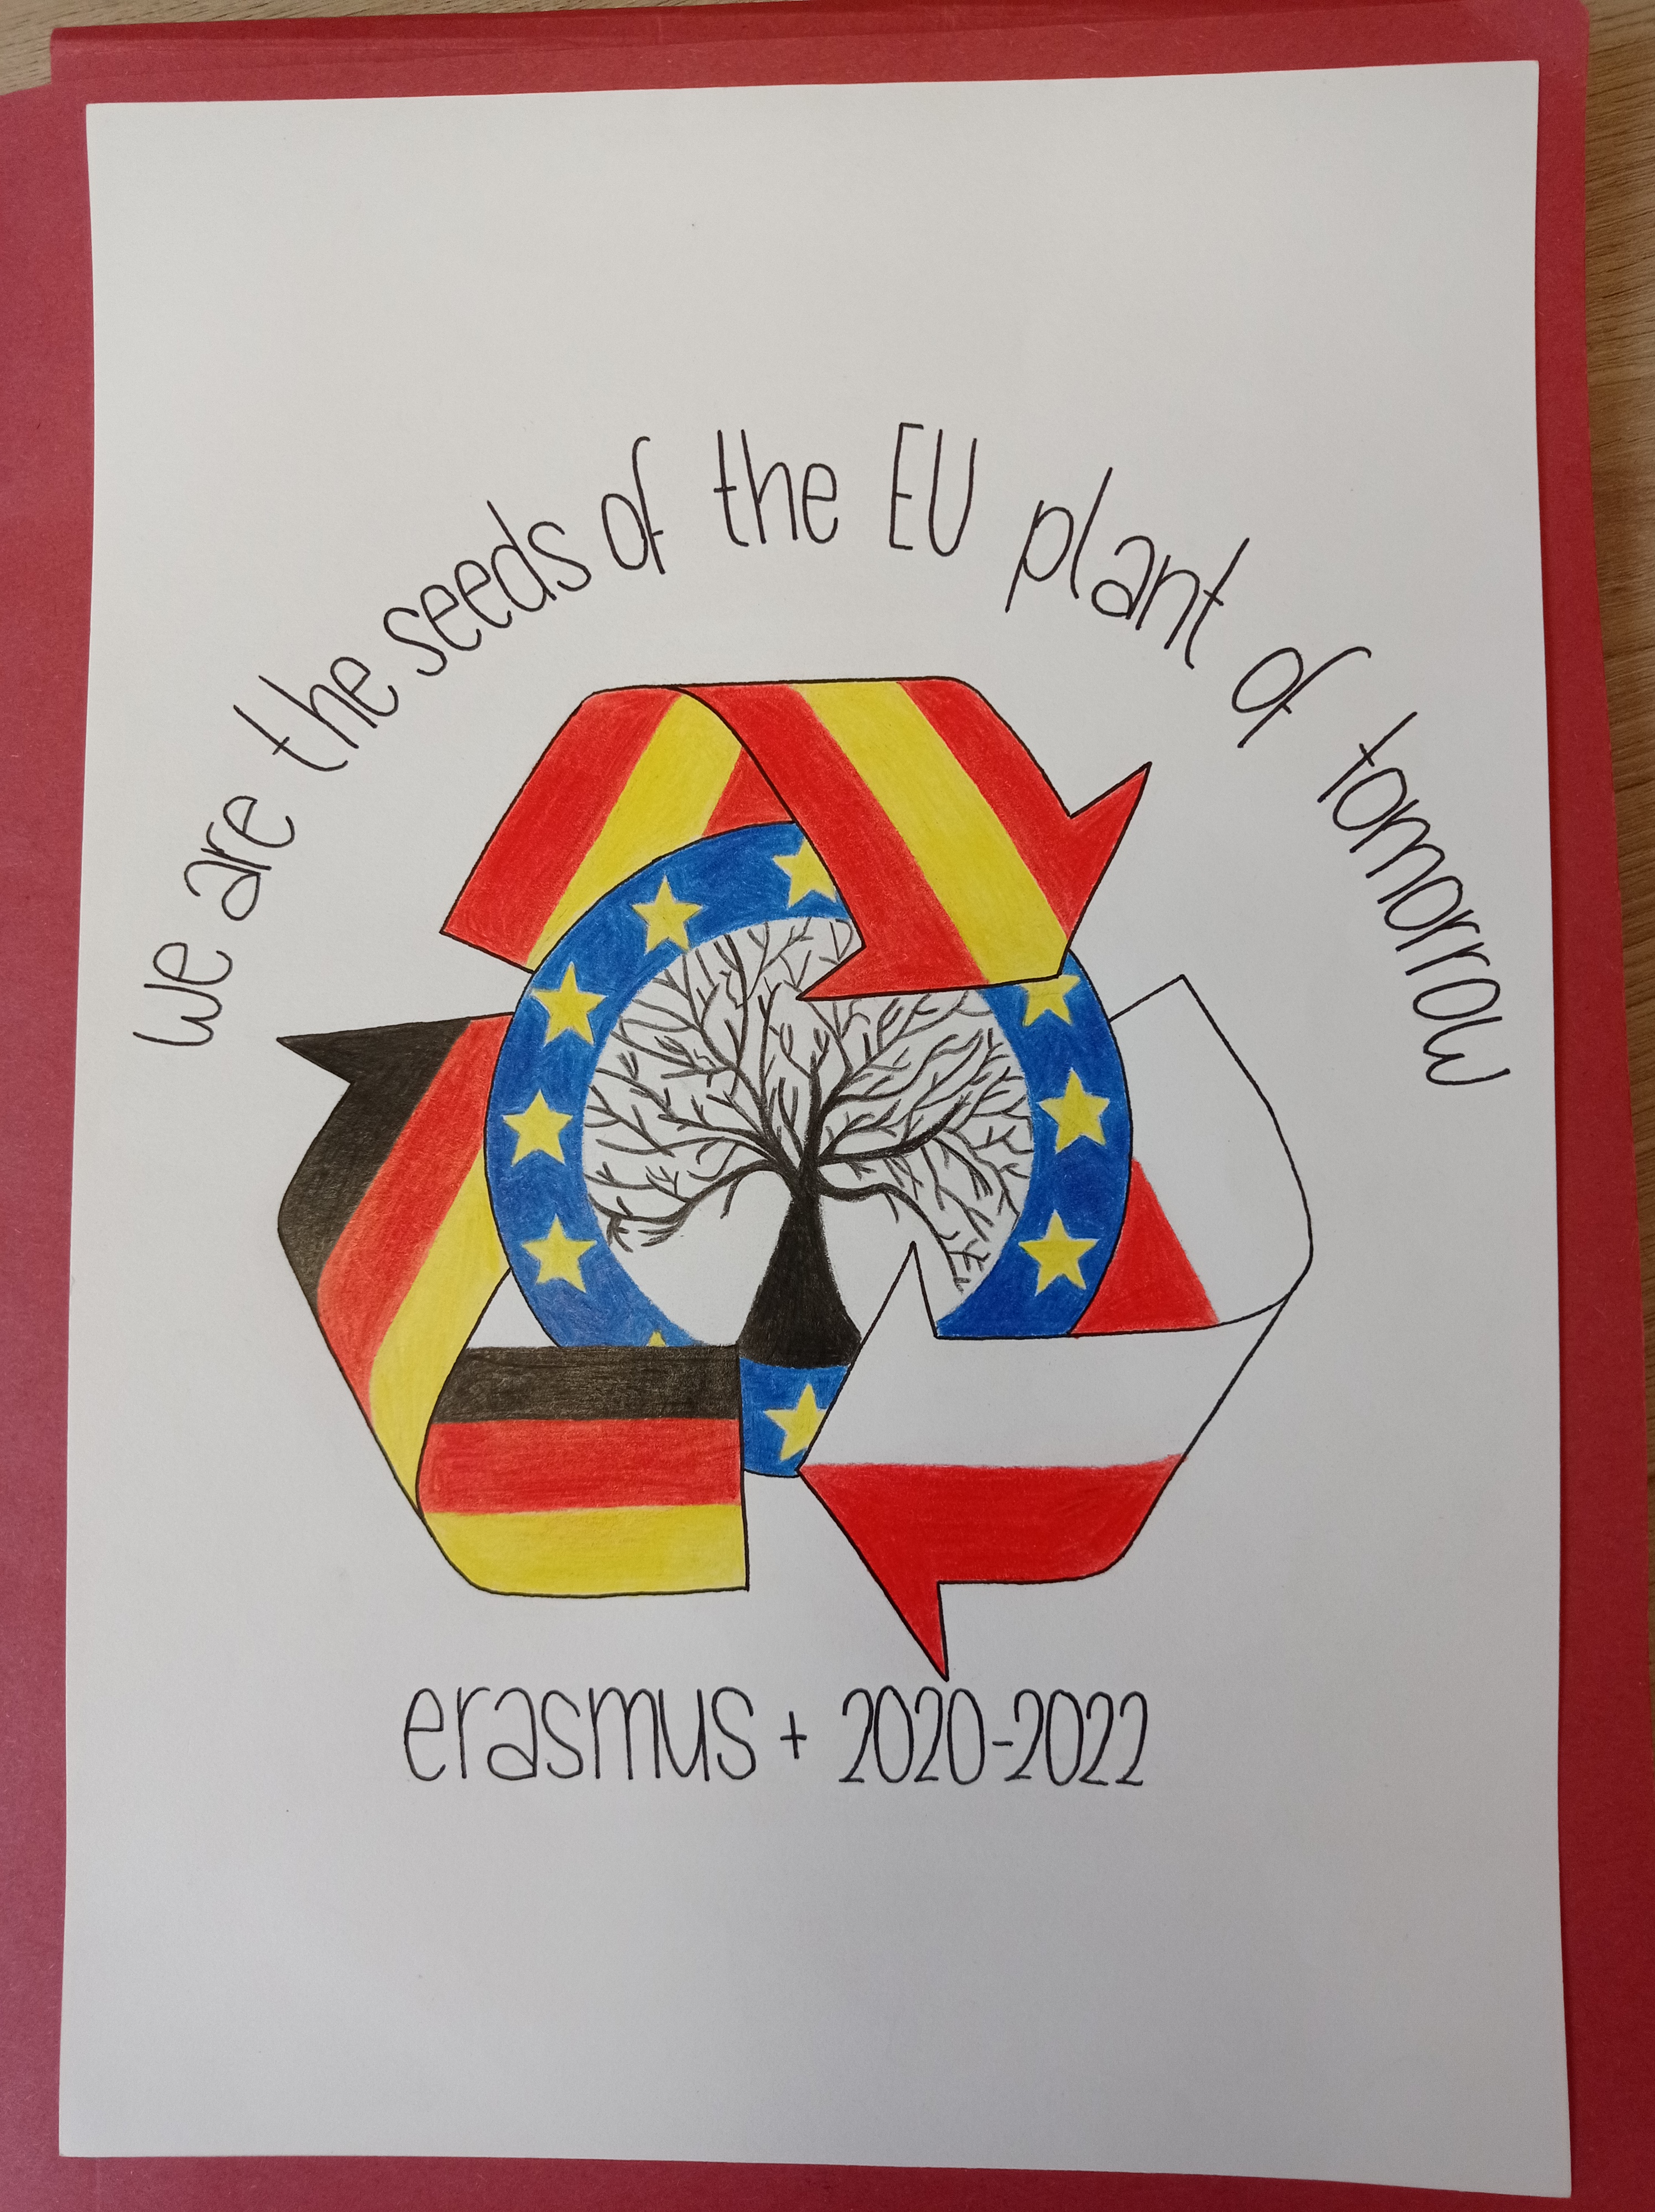 El IES Barañáin pone en marcha su nuevo proyecto Erasmus+ sobre medioambiente y turismo sostenible con la celebración del Día Internacional de los Humedales y la elección del logo del proyecto